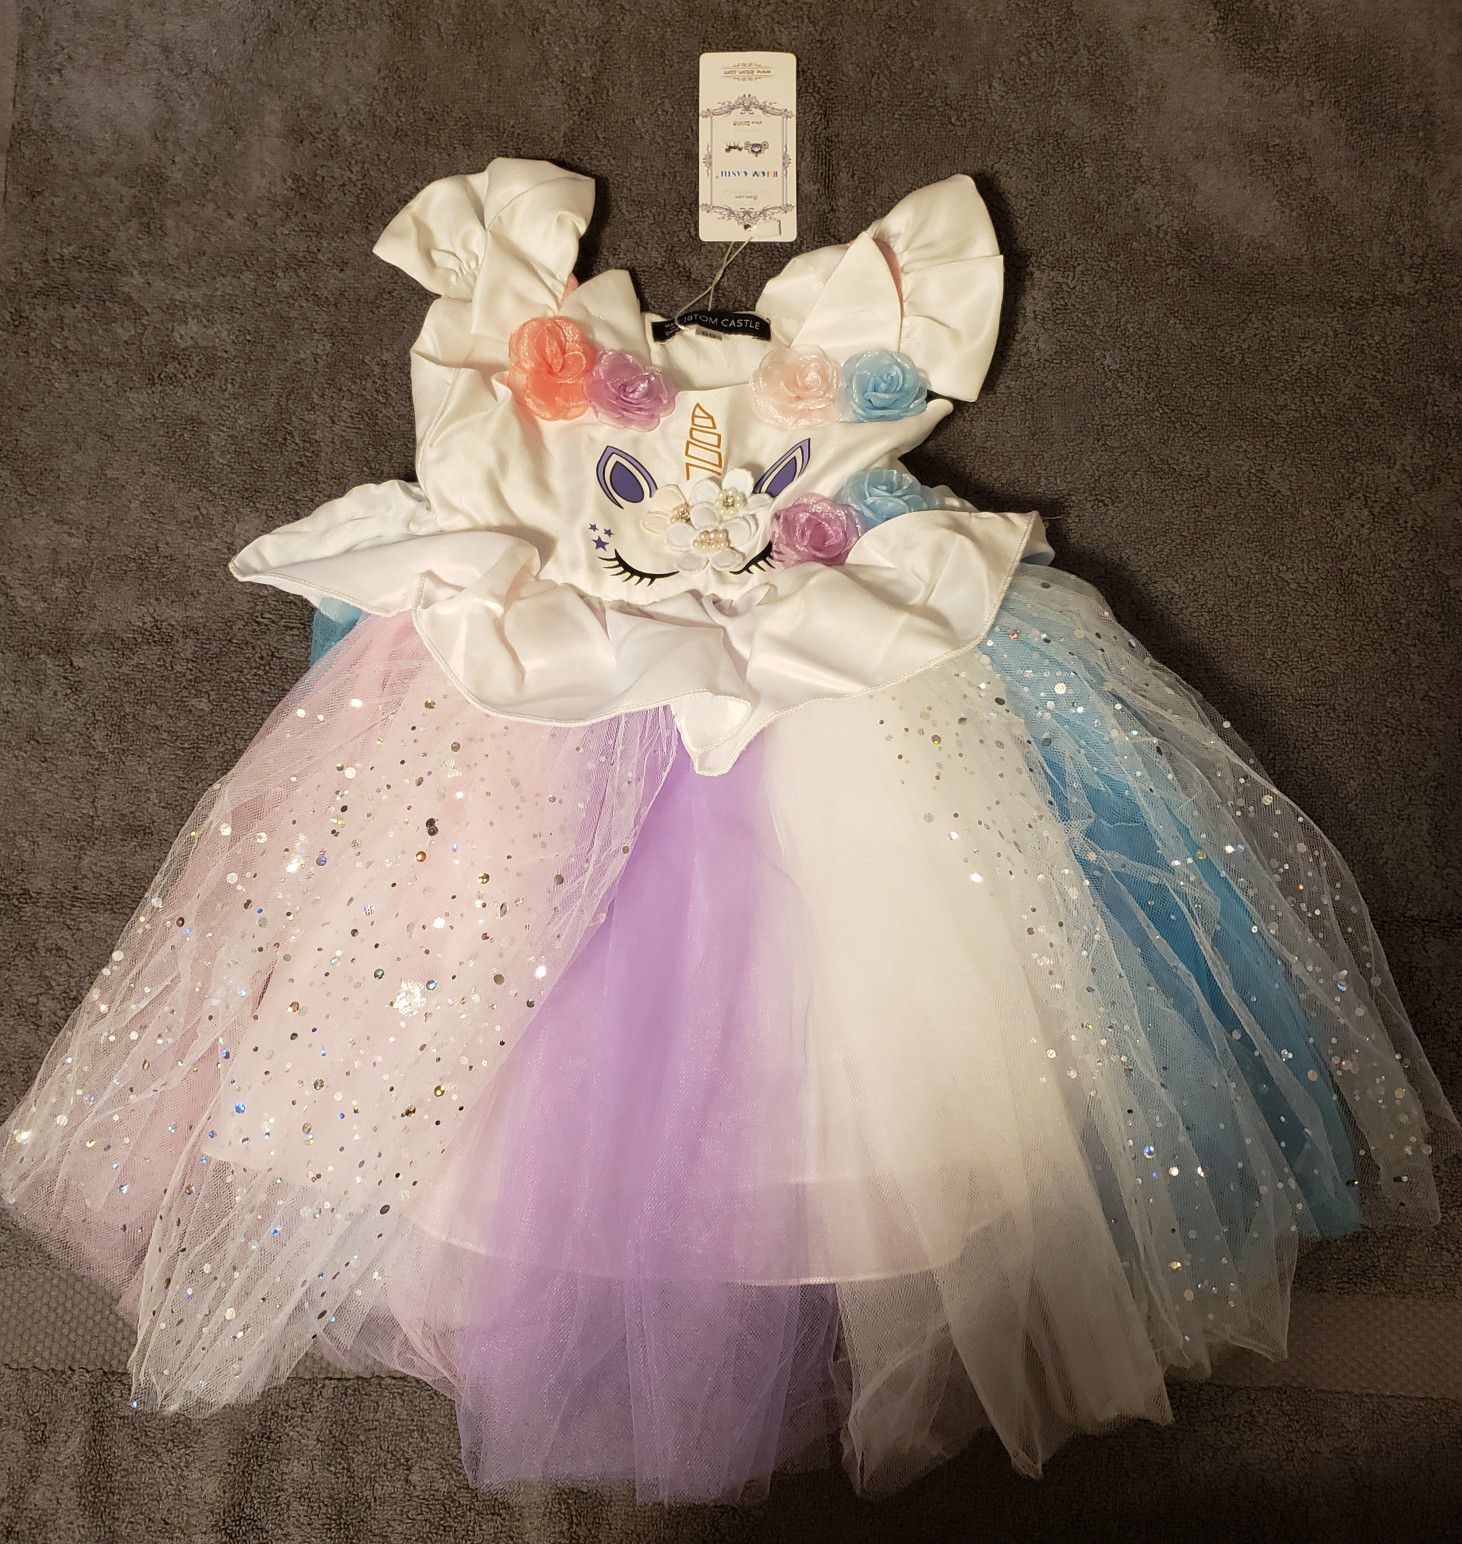 New!! Unicorn costume princess dress (size 80, long 18")... $25